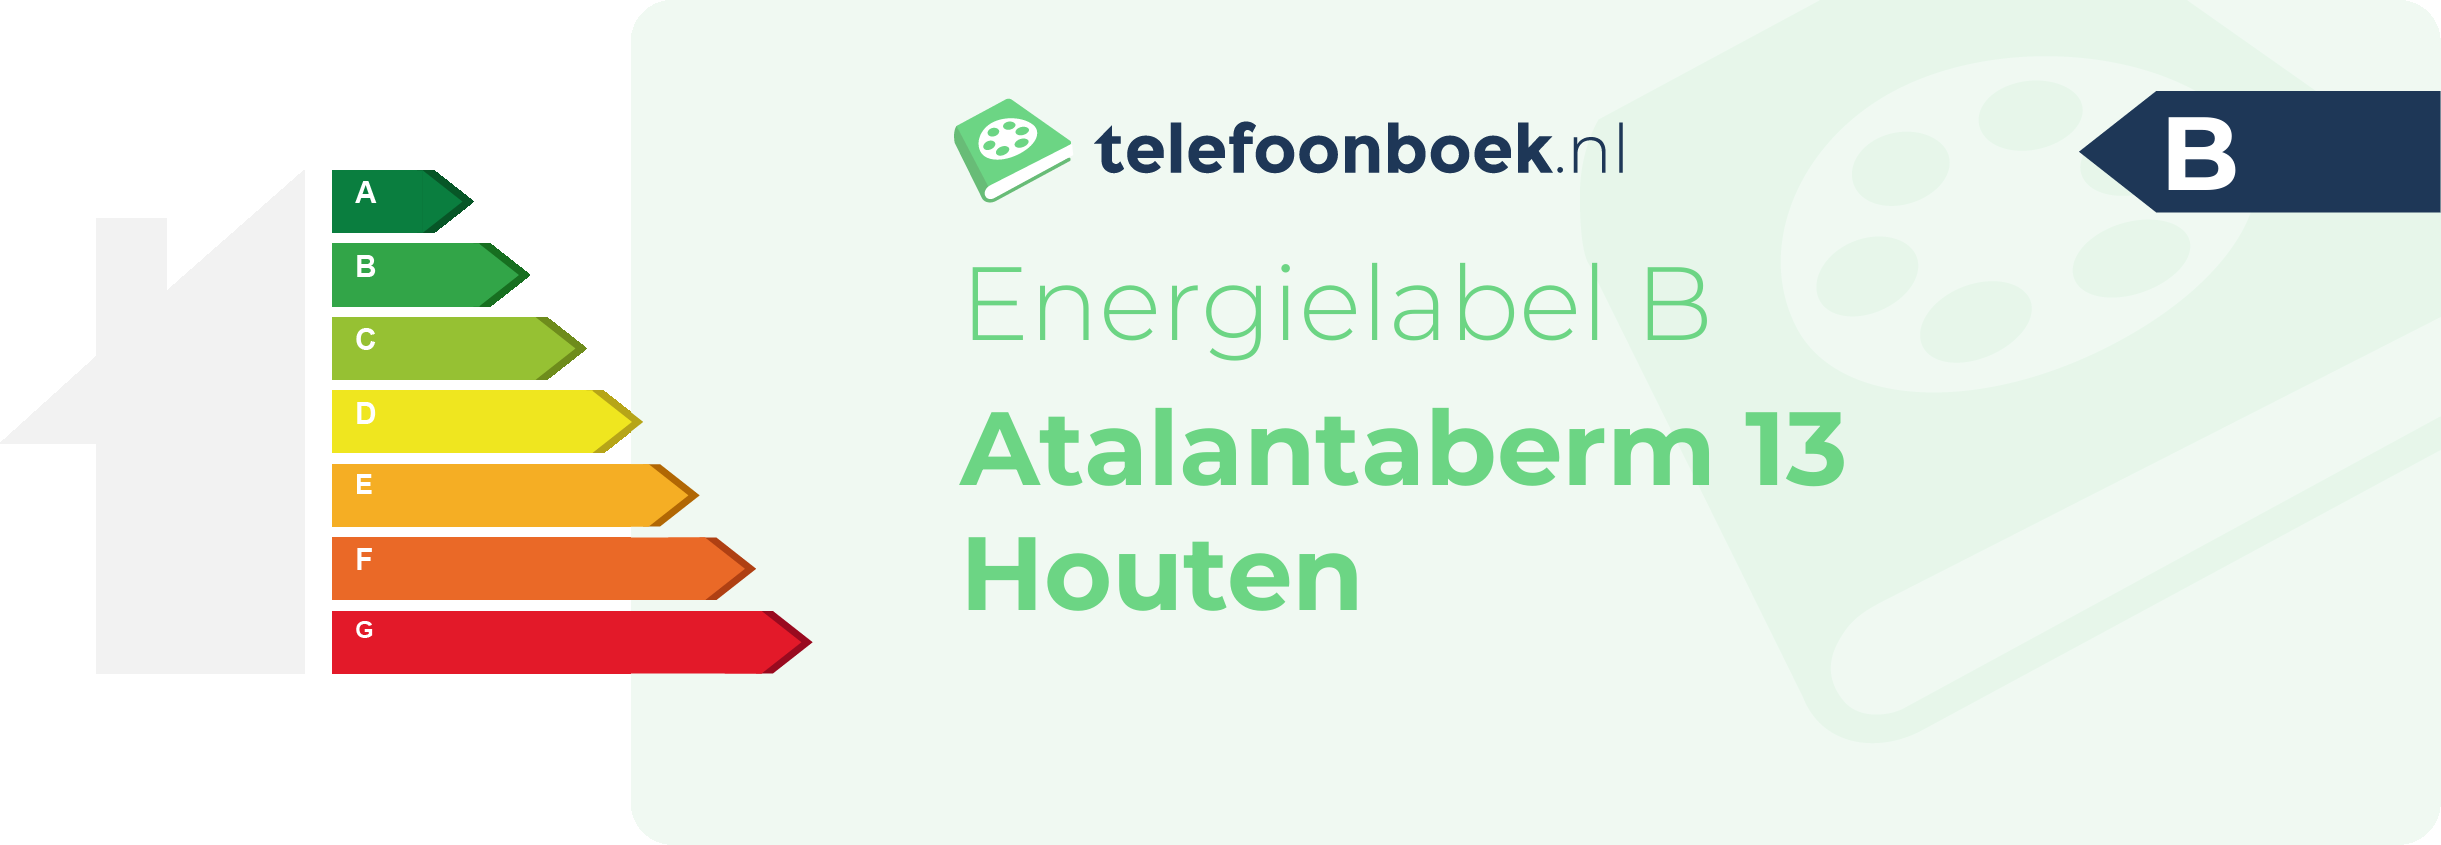 Energielabel Atalantaberm 13 Houten